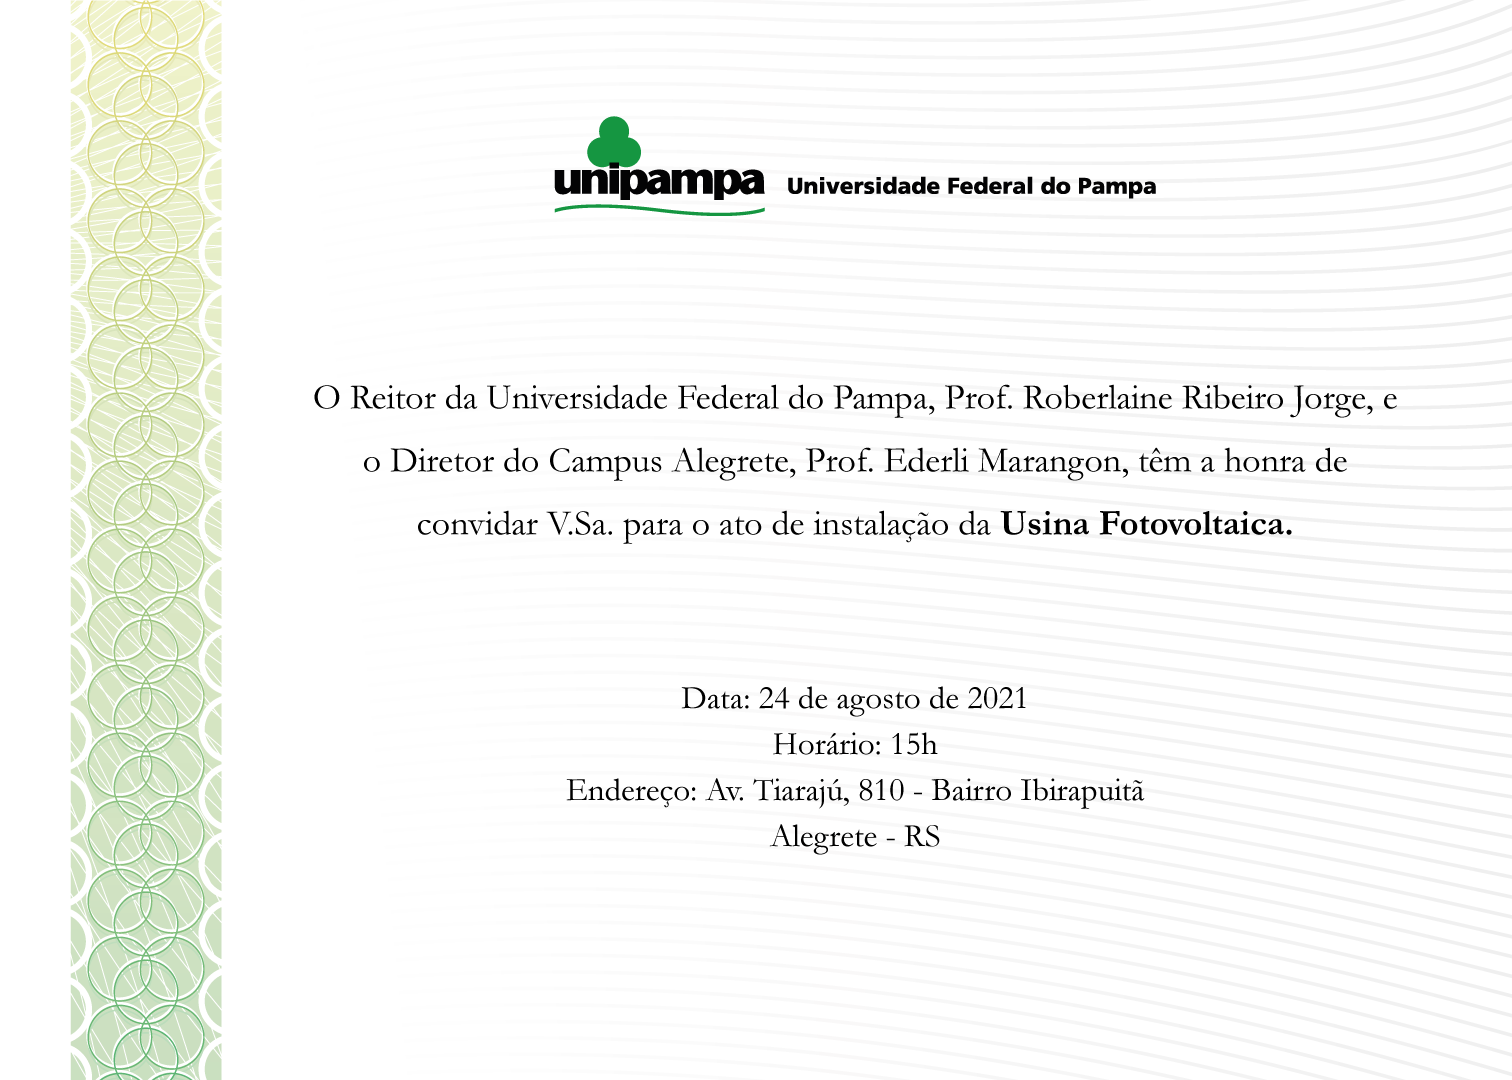 Convite para inauguração da Usina Fotovoltaica do Campus Alegrete - Divulgação